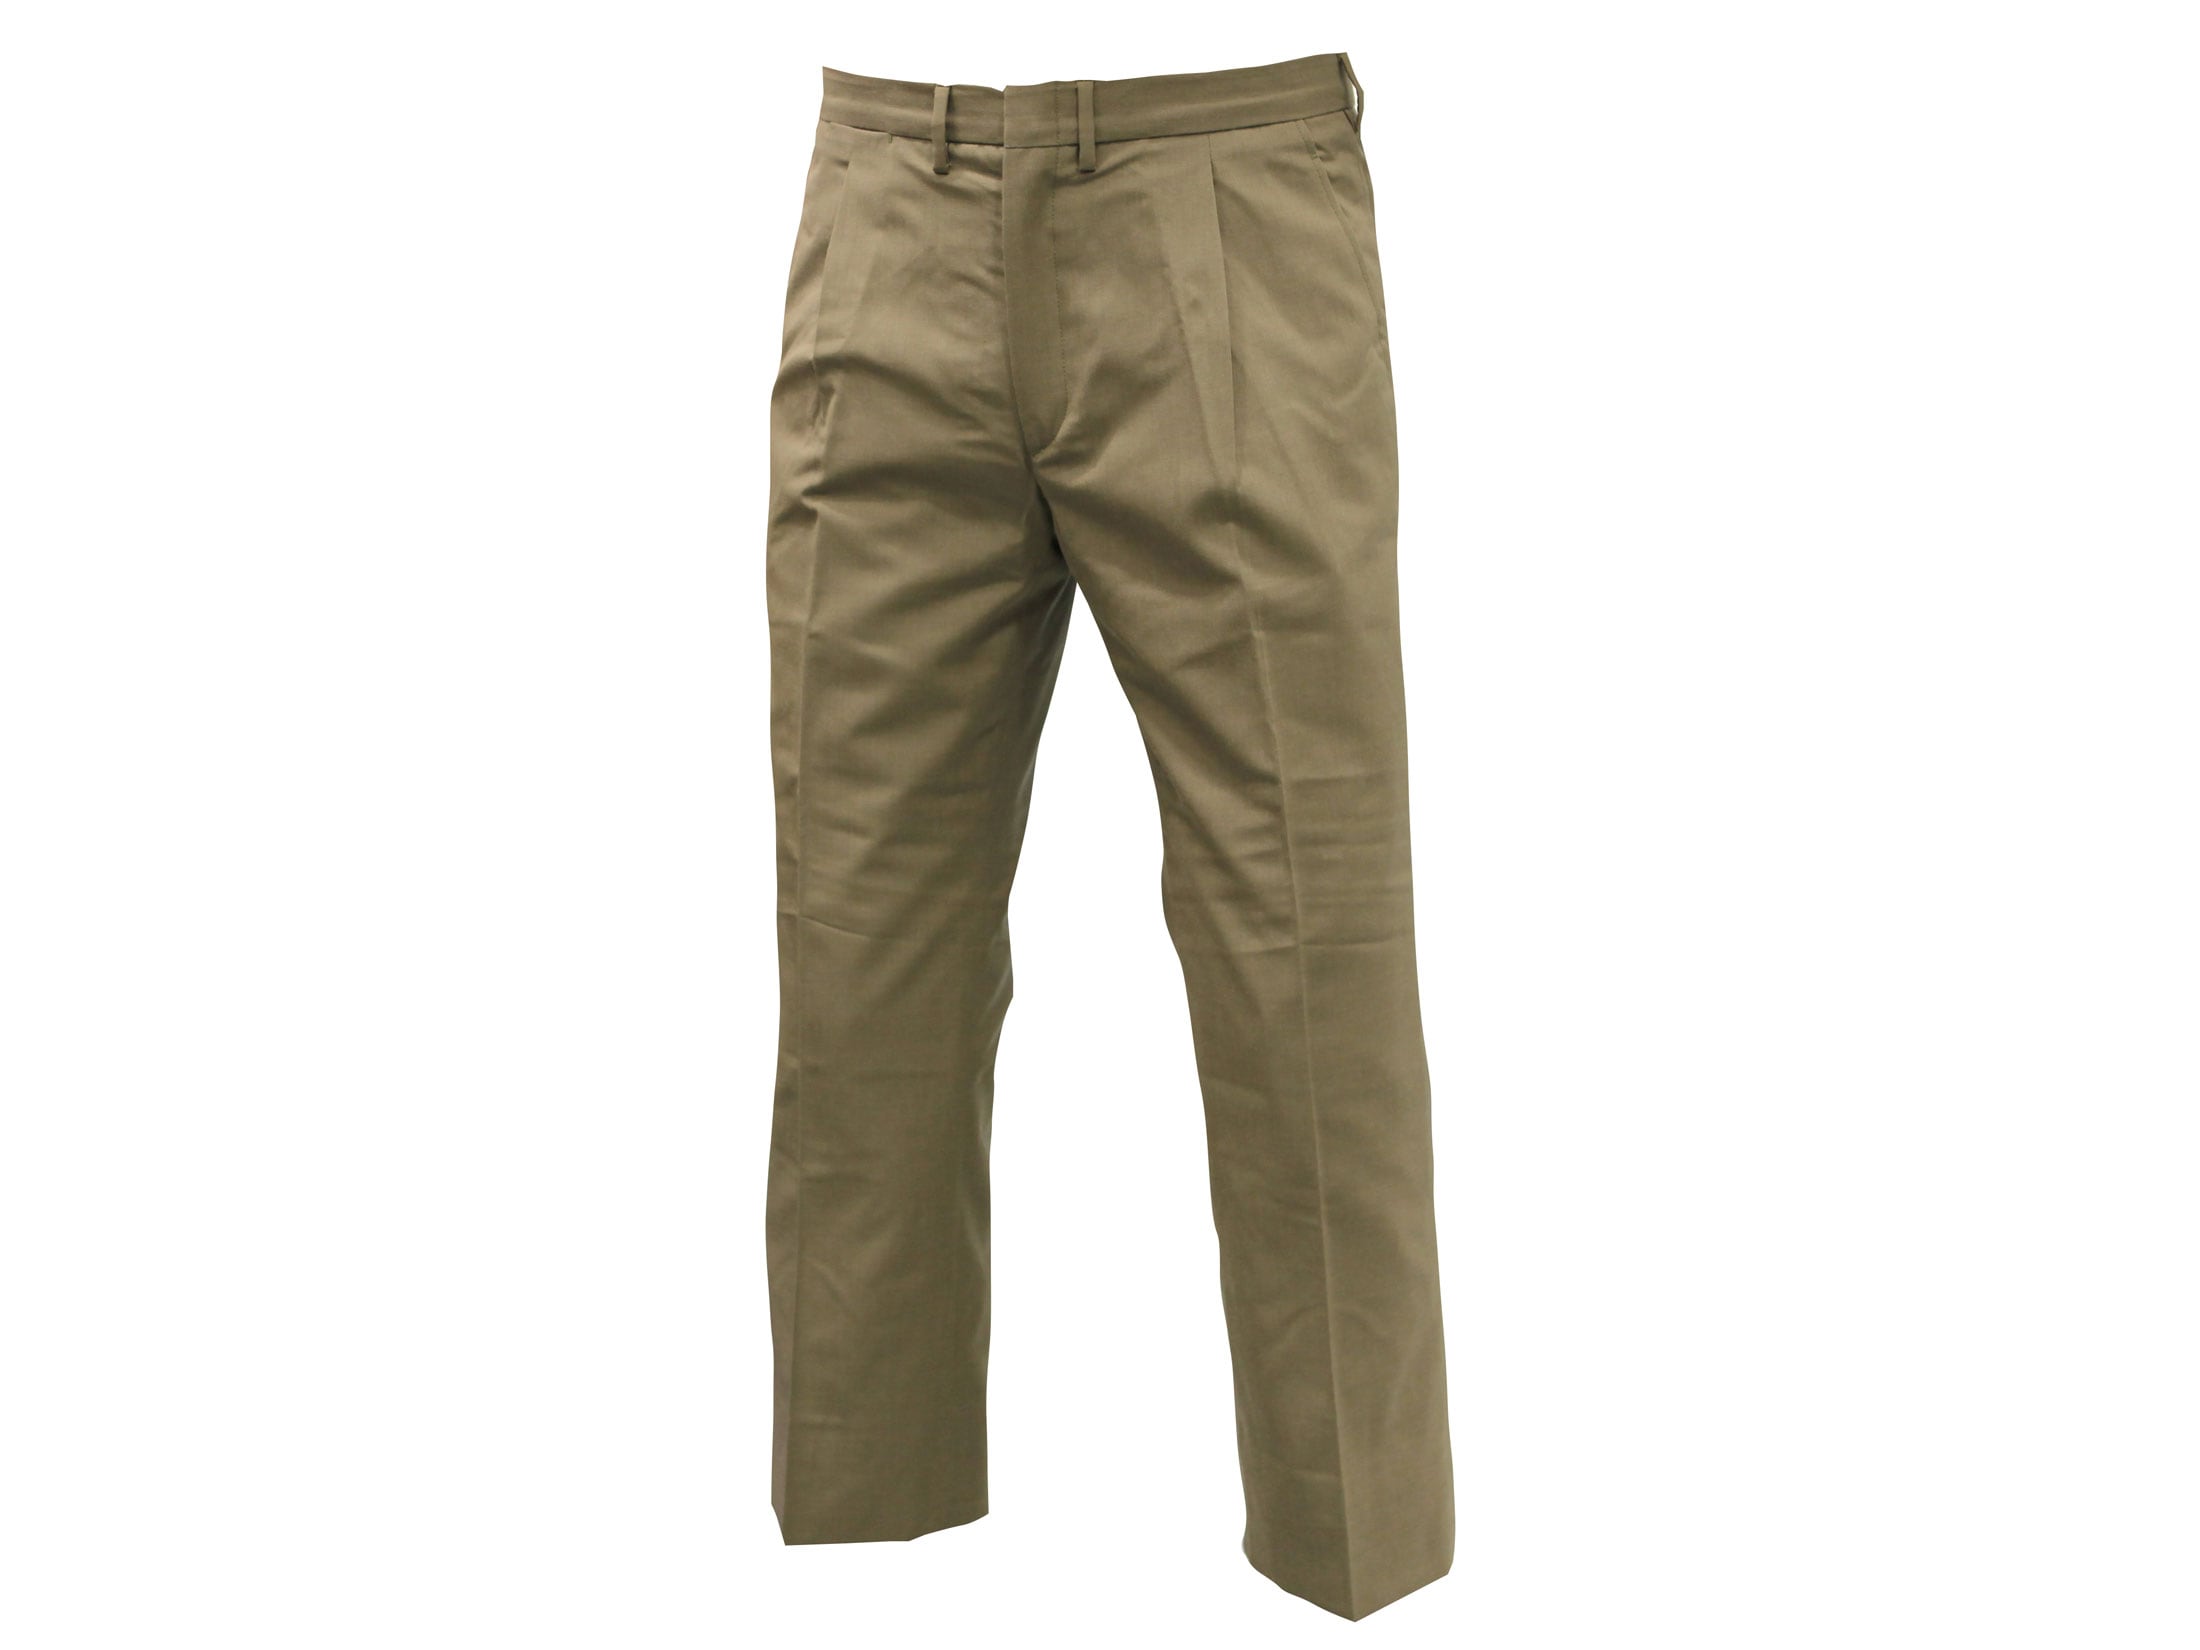 Military Surplus Italian Chino Pants Grade 1 Dark Khaki 34 Waist